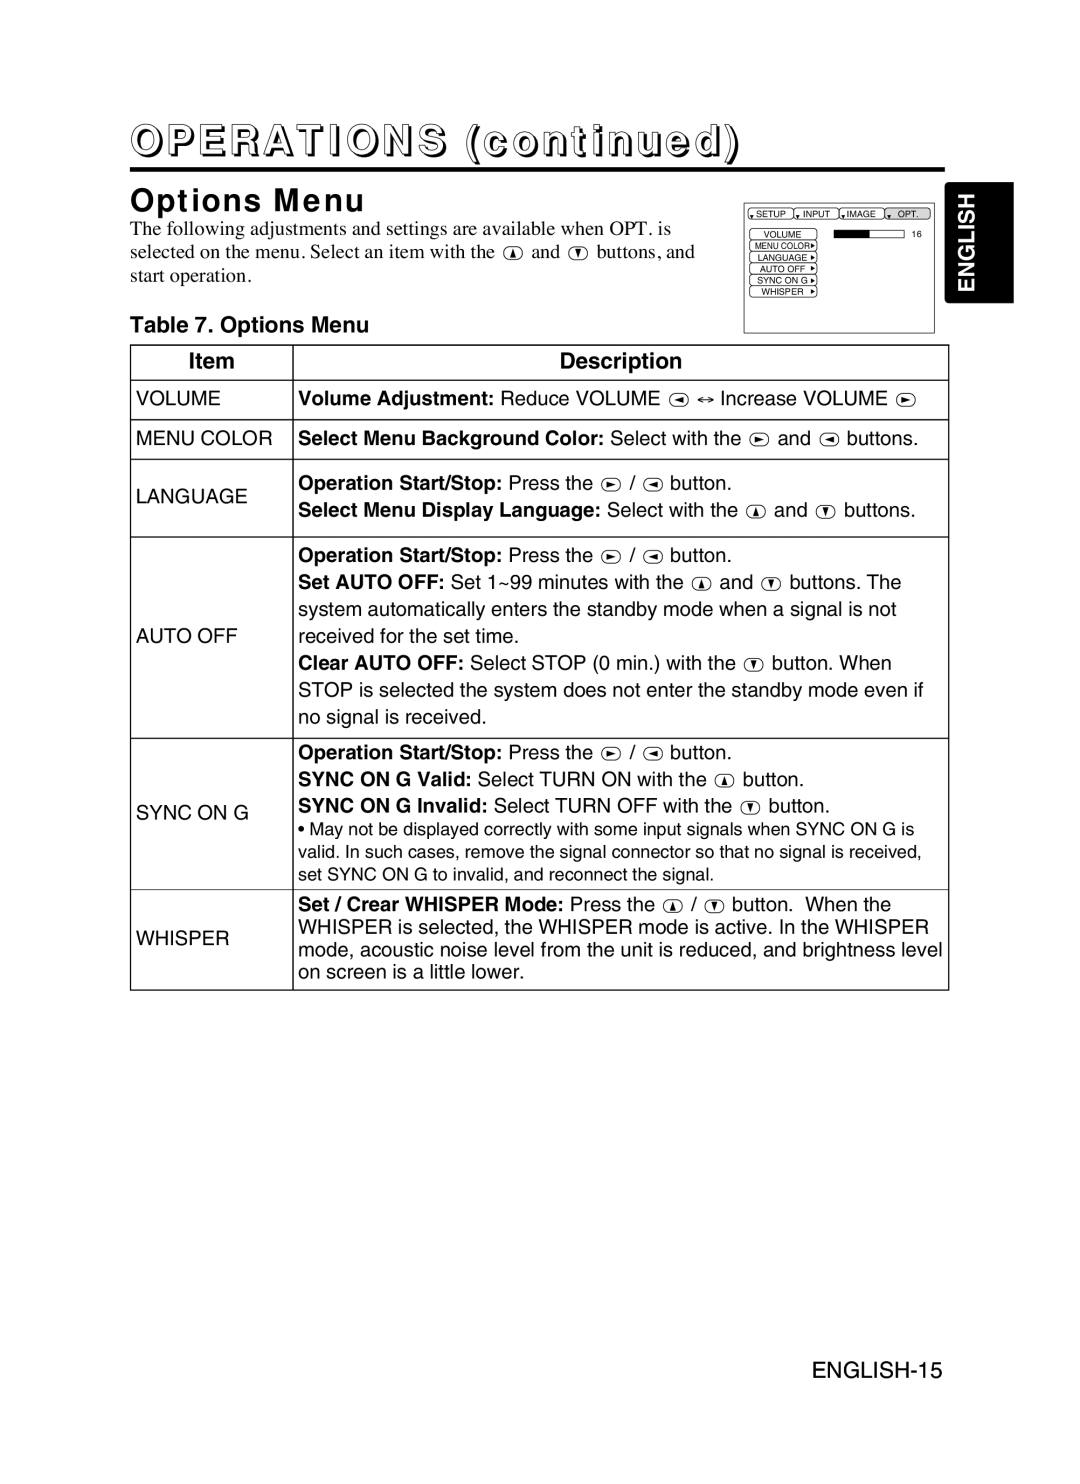 Proxima ASA DP6870 manual Options Menu, OPERATIONS continued, English, Description 